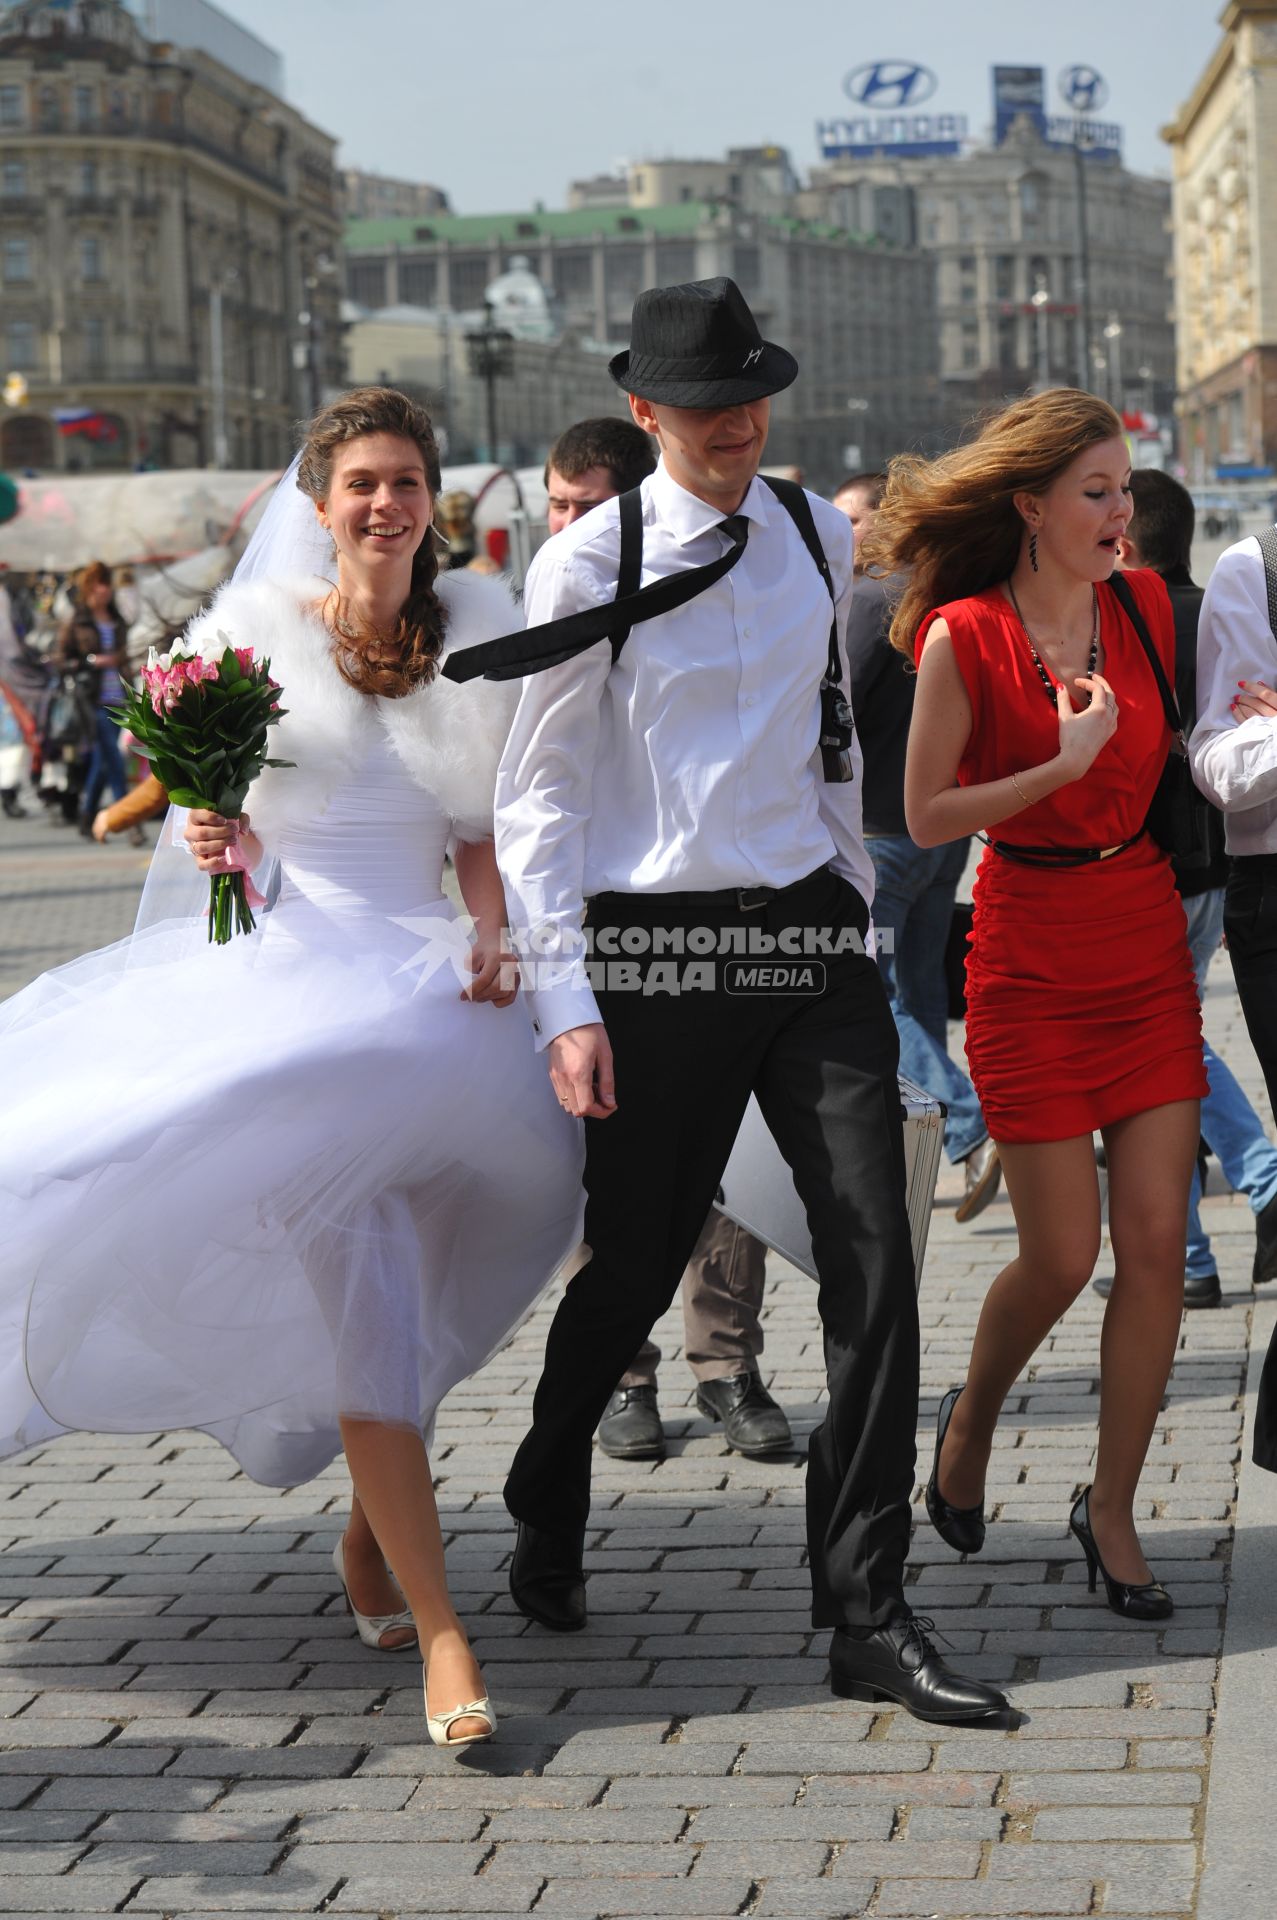 Свадьба. На снимке: молодожены на городской улице.